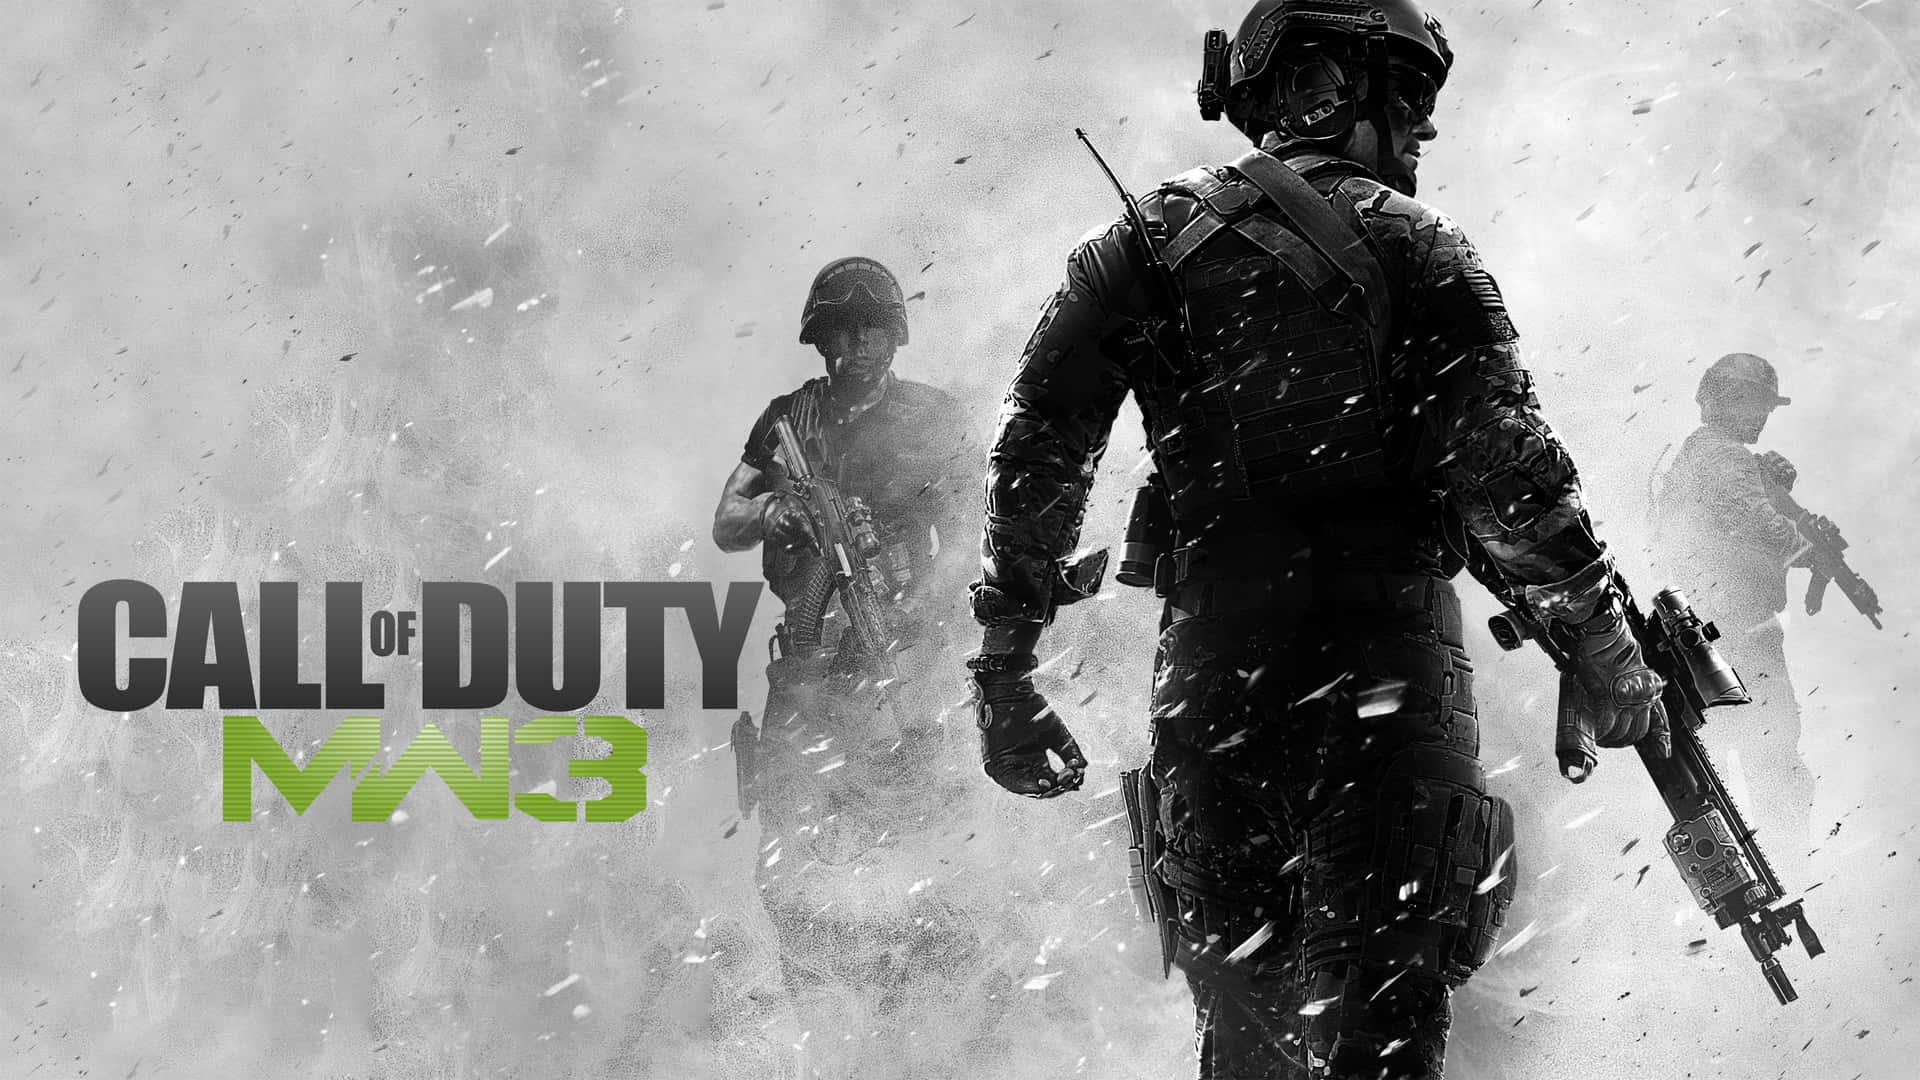 Laemoción De Call Of Duty: Modern Warfare.